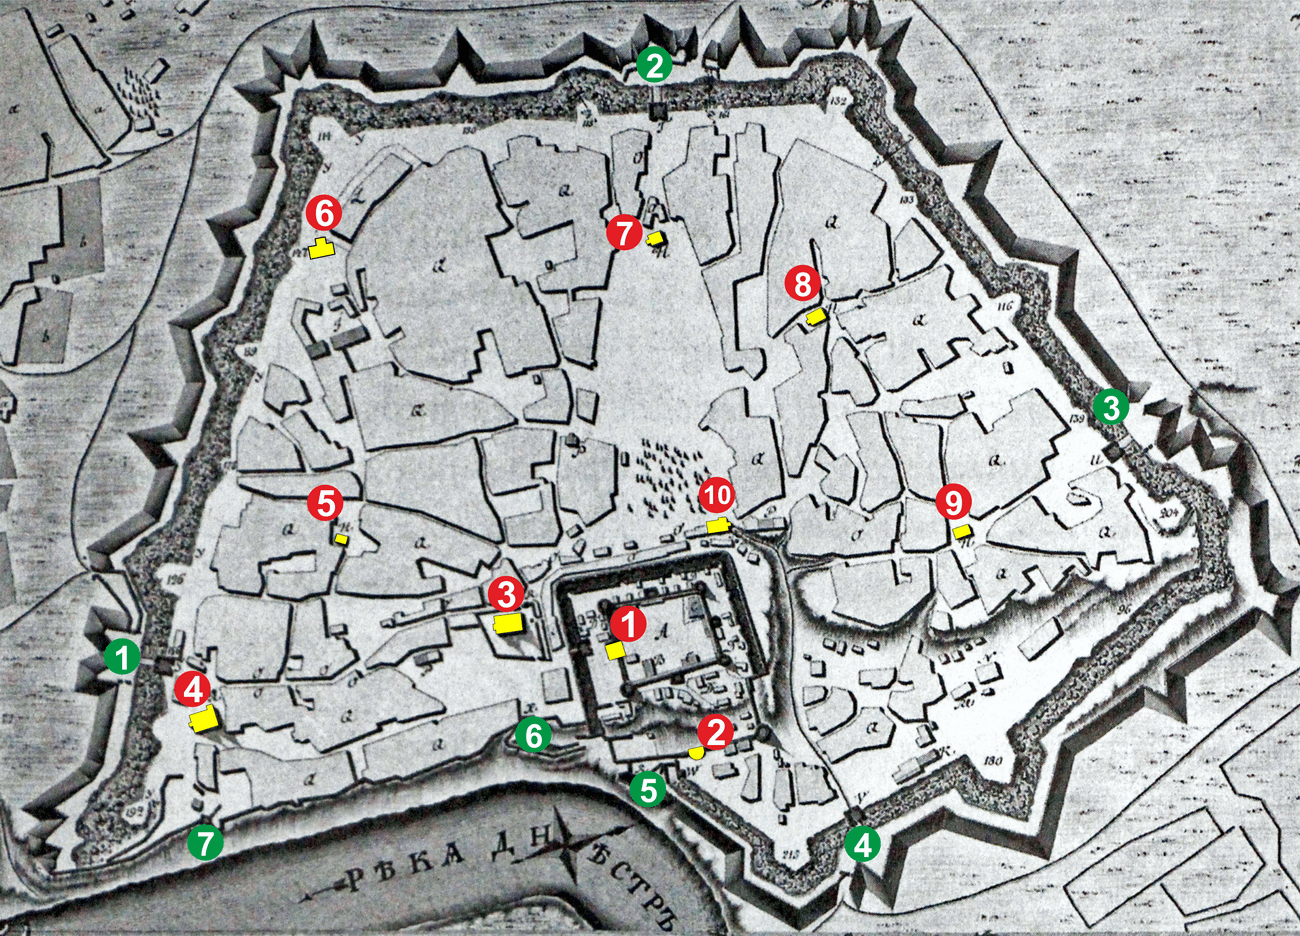  Harta din 1790 care arată moscheile evidențiate cu referire la porți